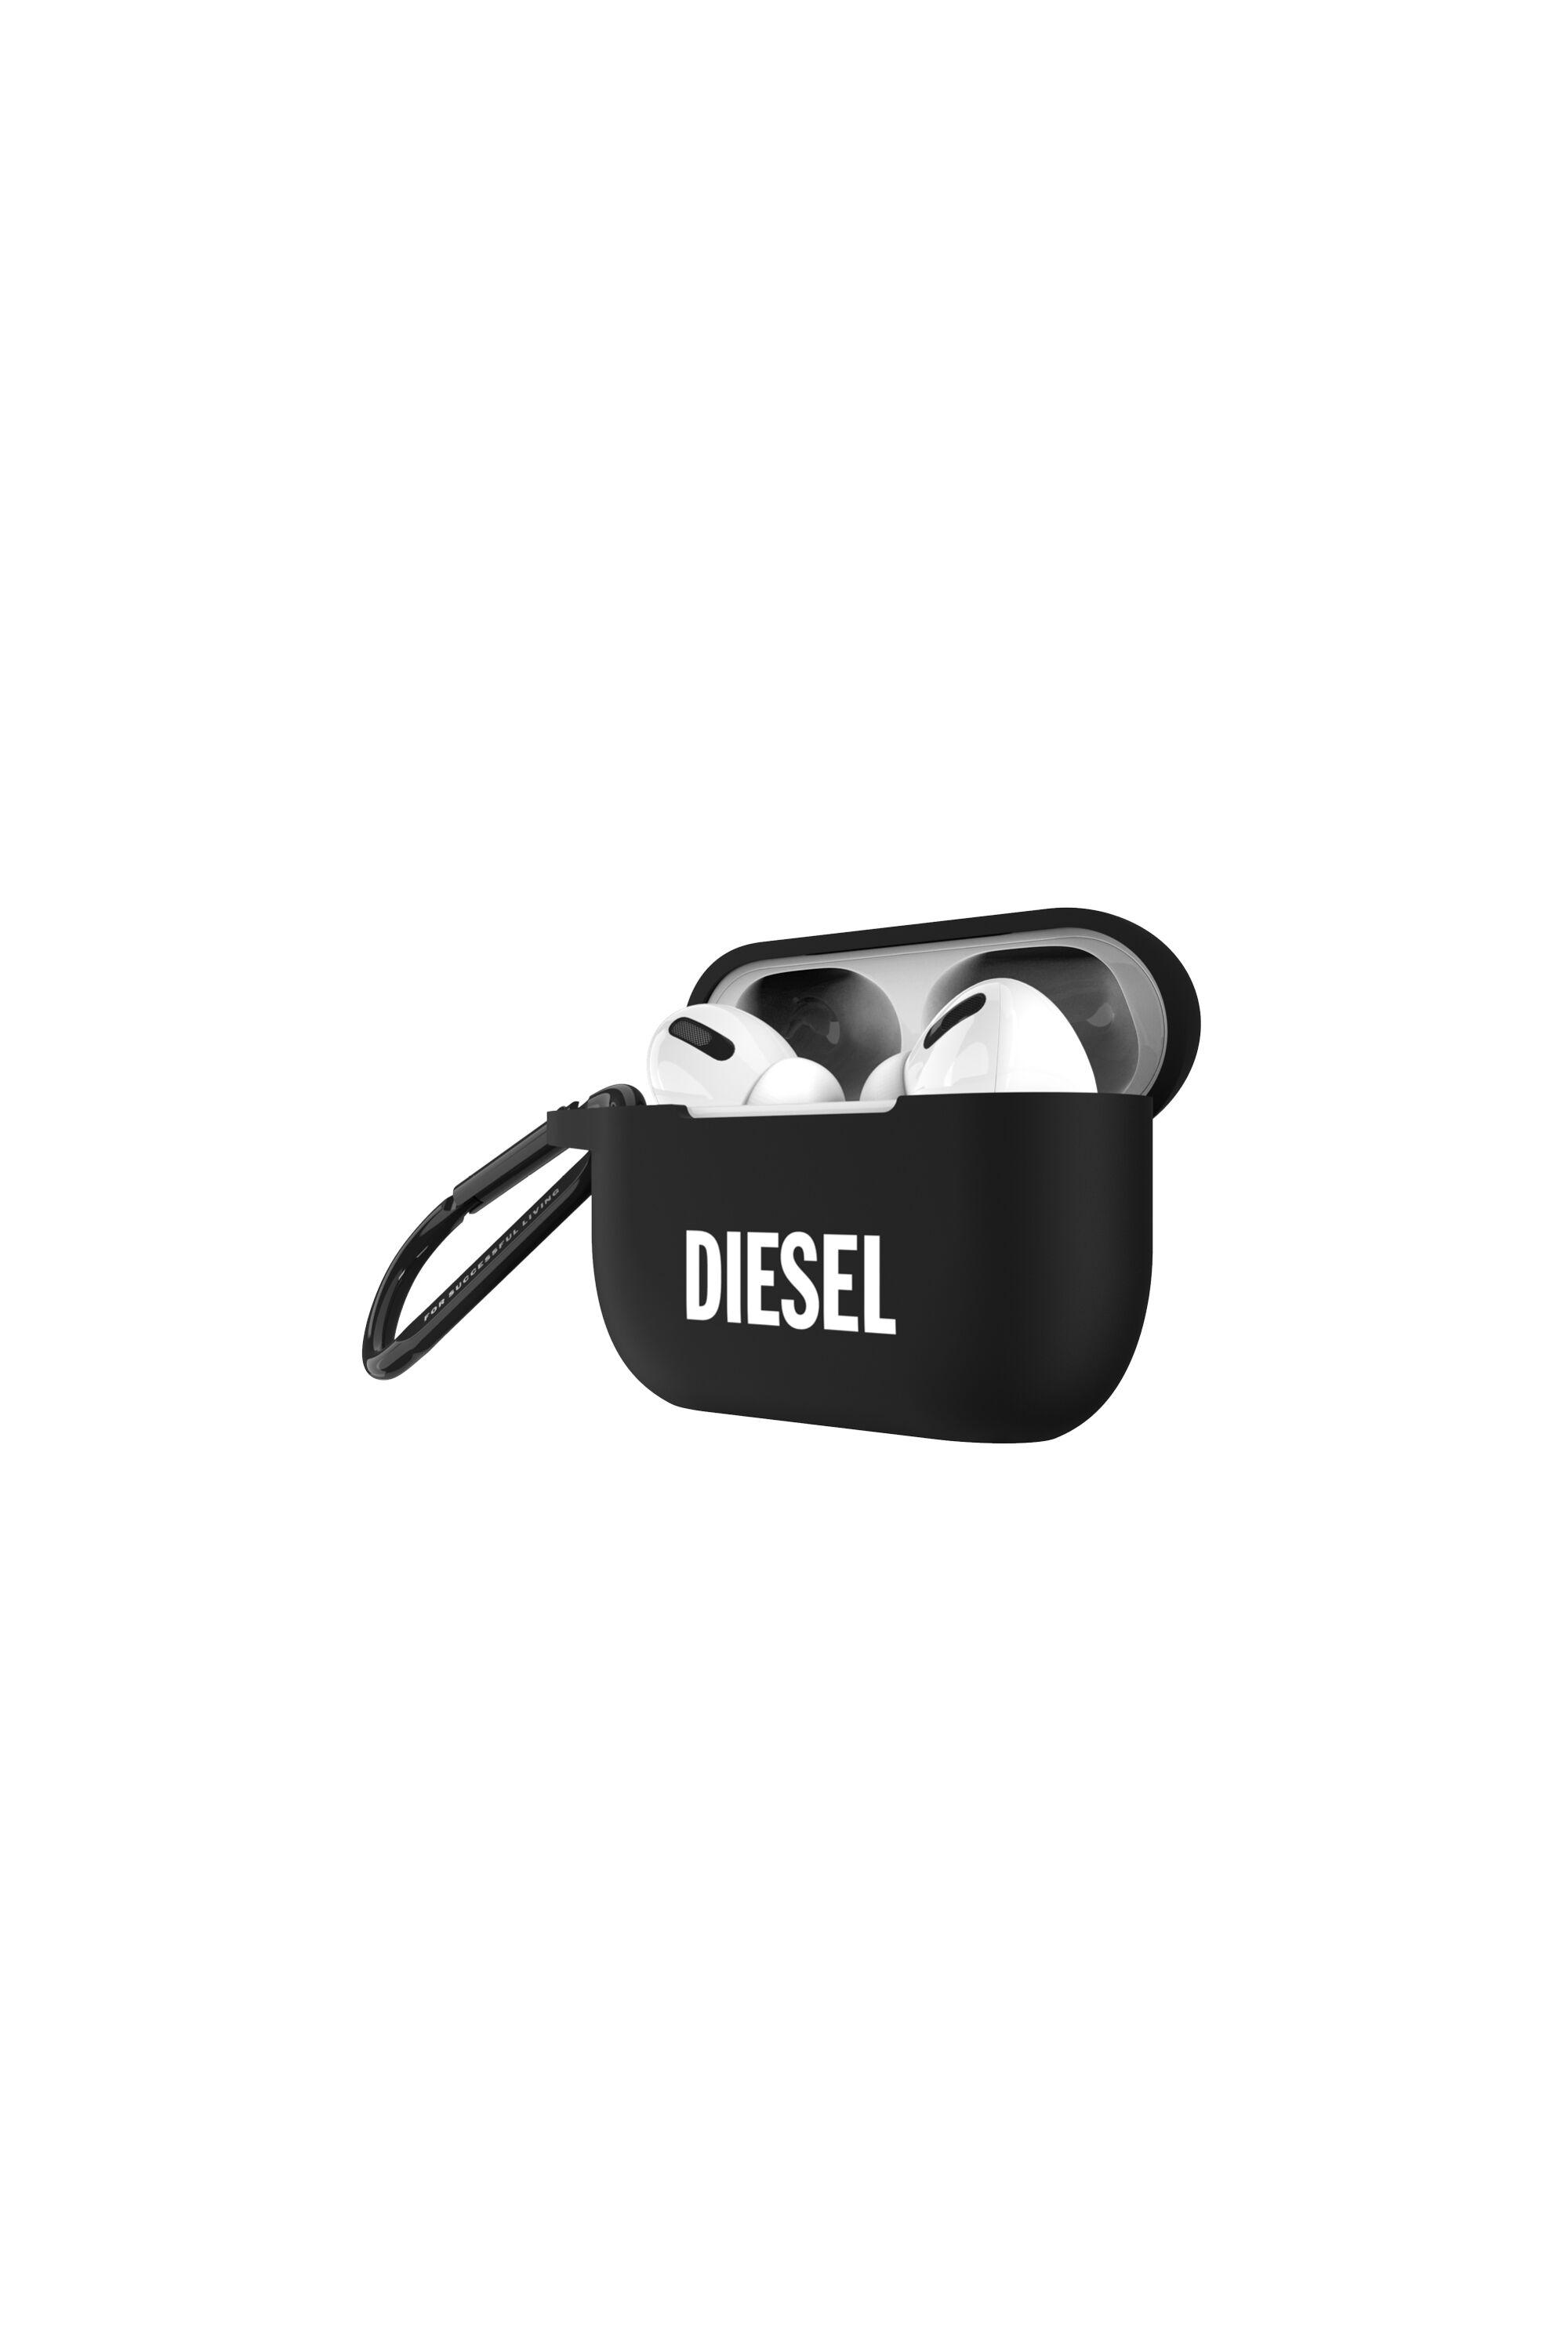 Diesel - 45835 AIRPOD CASE, Black - Image 3